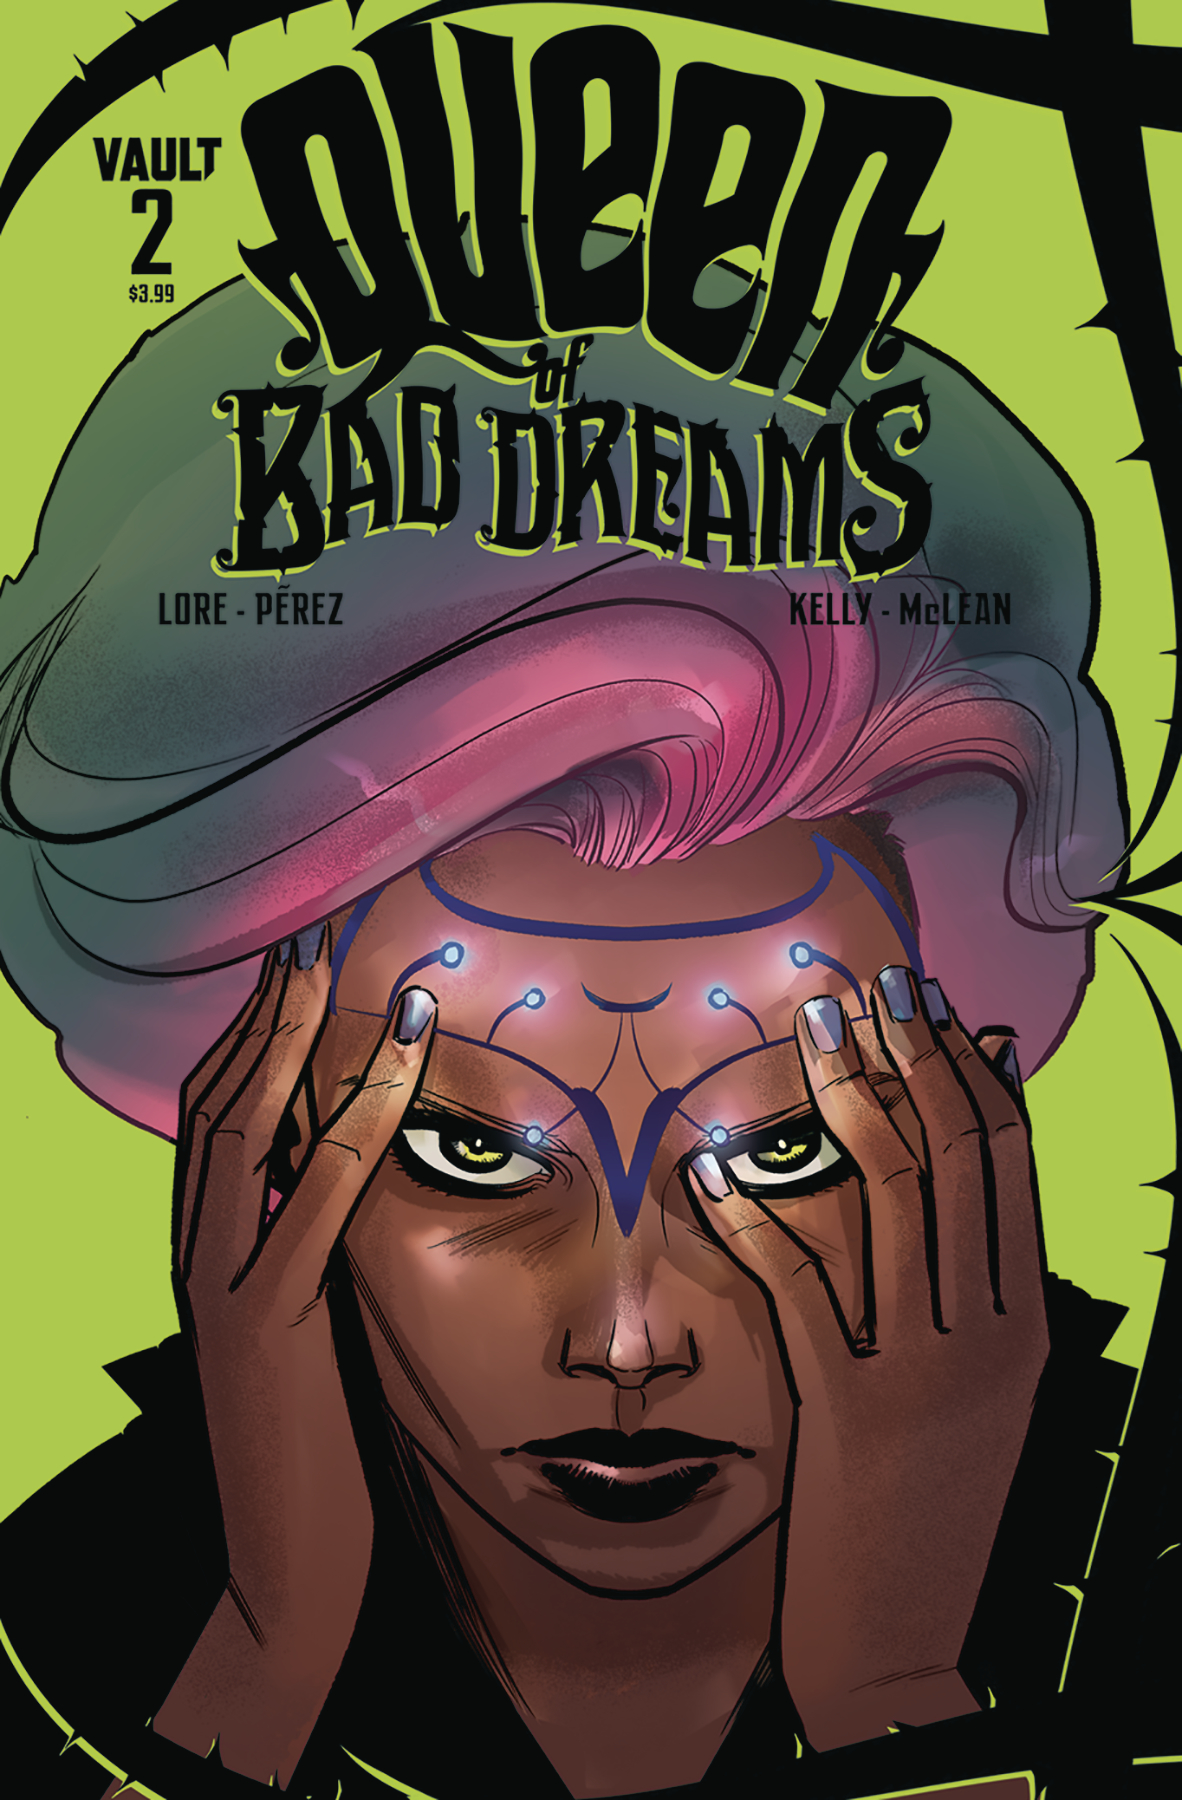 Queen of Bad Dreams no. 2 (2019 Series)